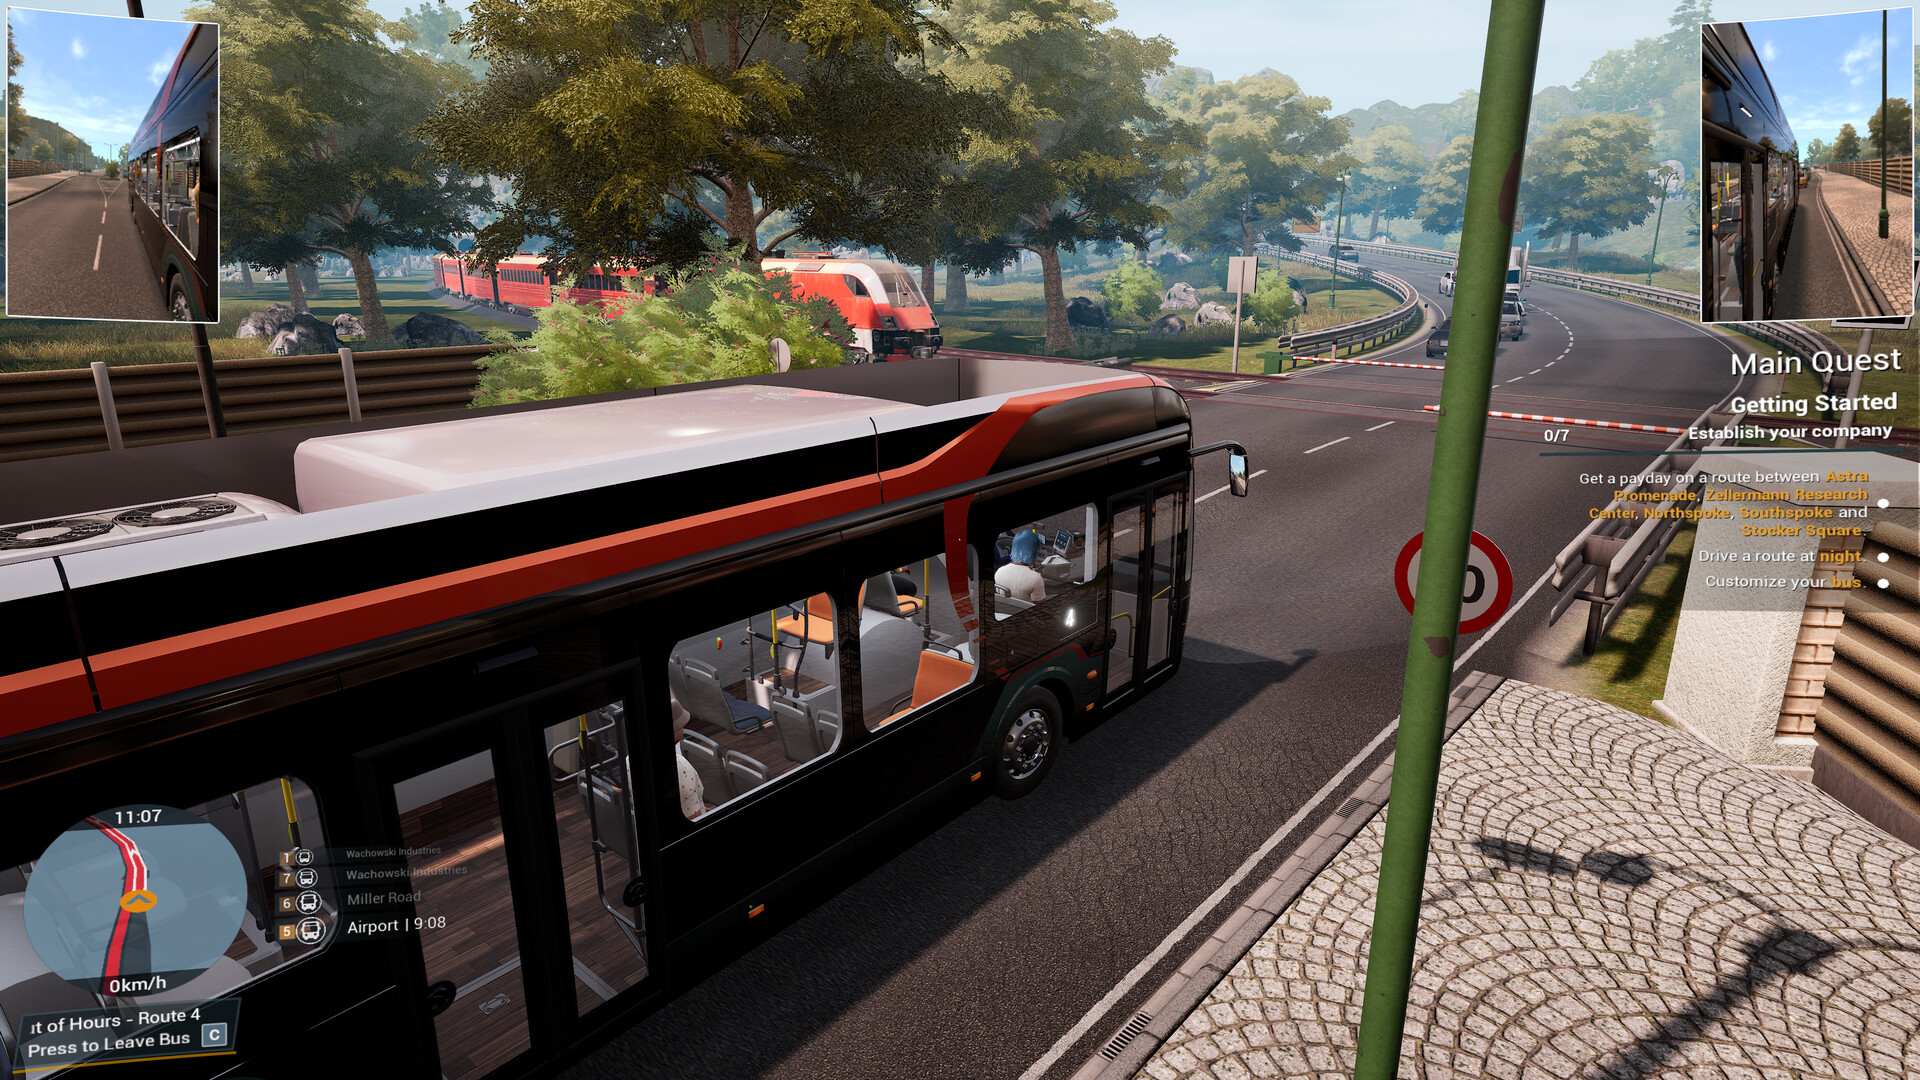 Jogos de simulador de ônibus na App Store